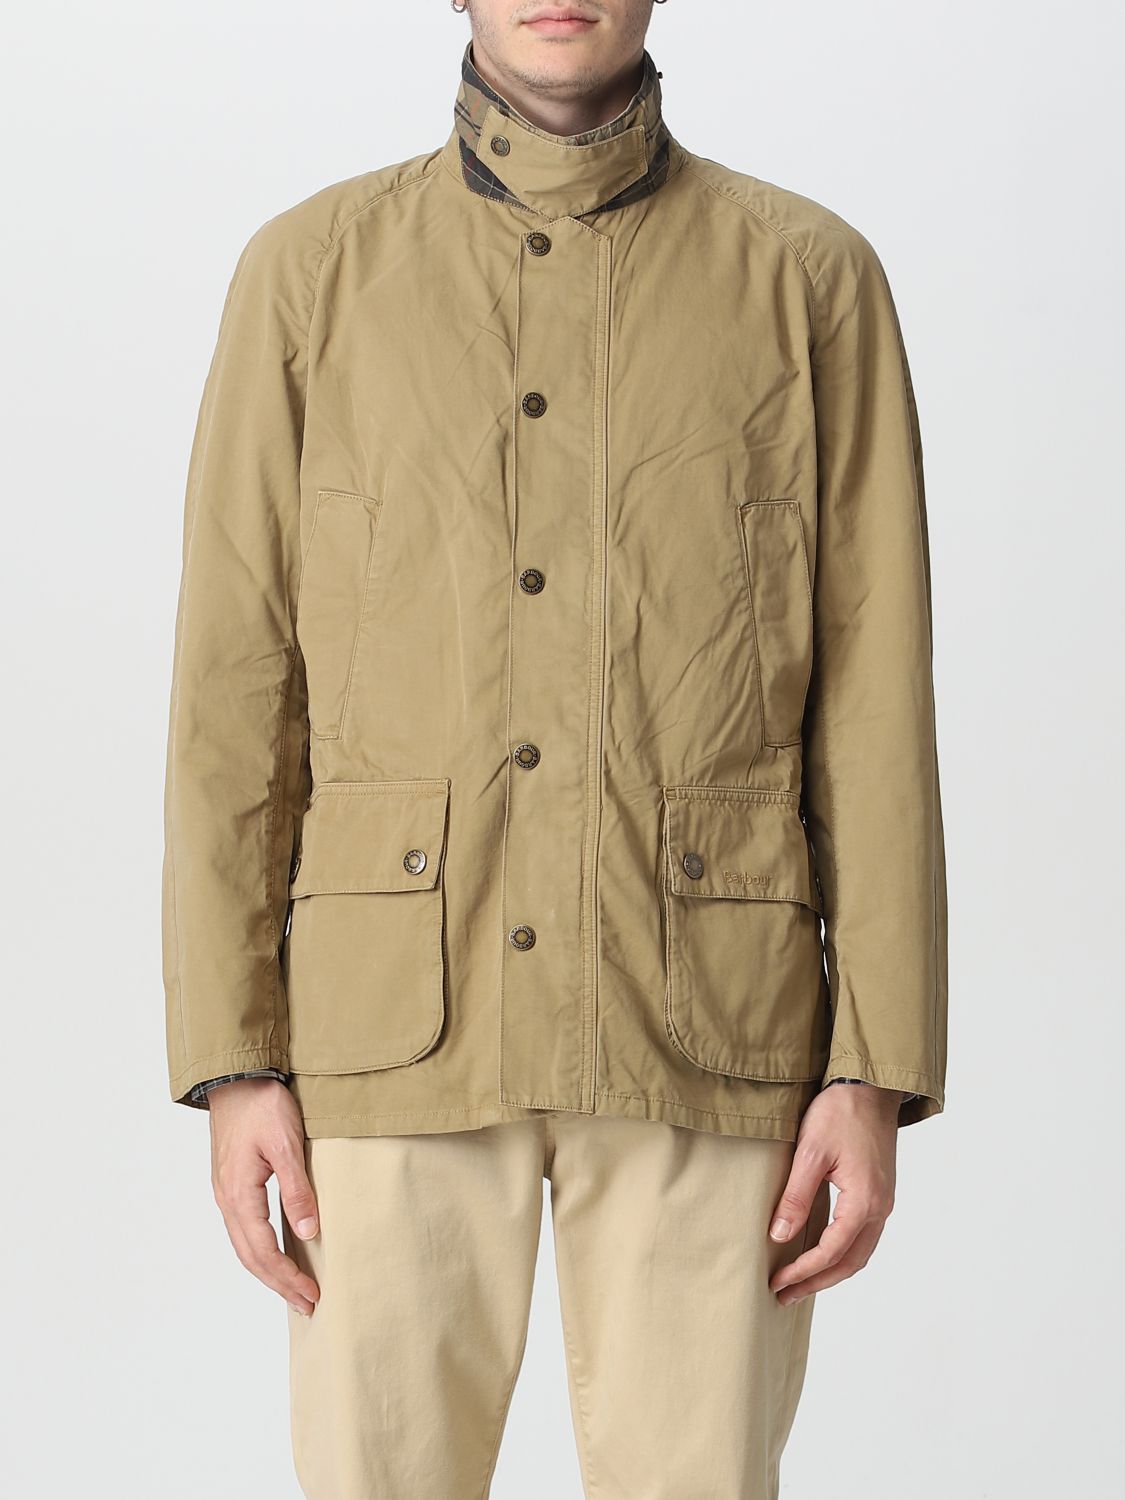 Barbour Outlet: jacket for man - Beige | Barbour jacket MCA0792 